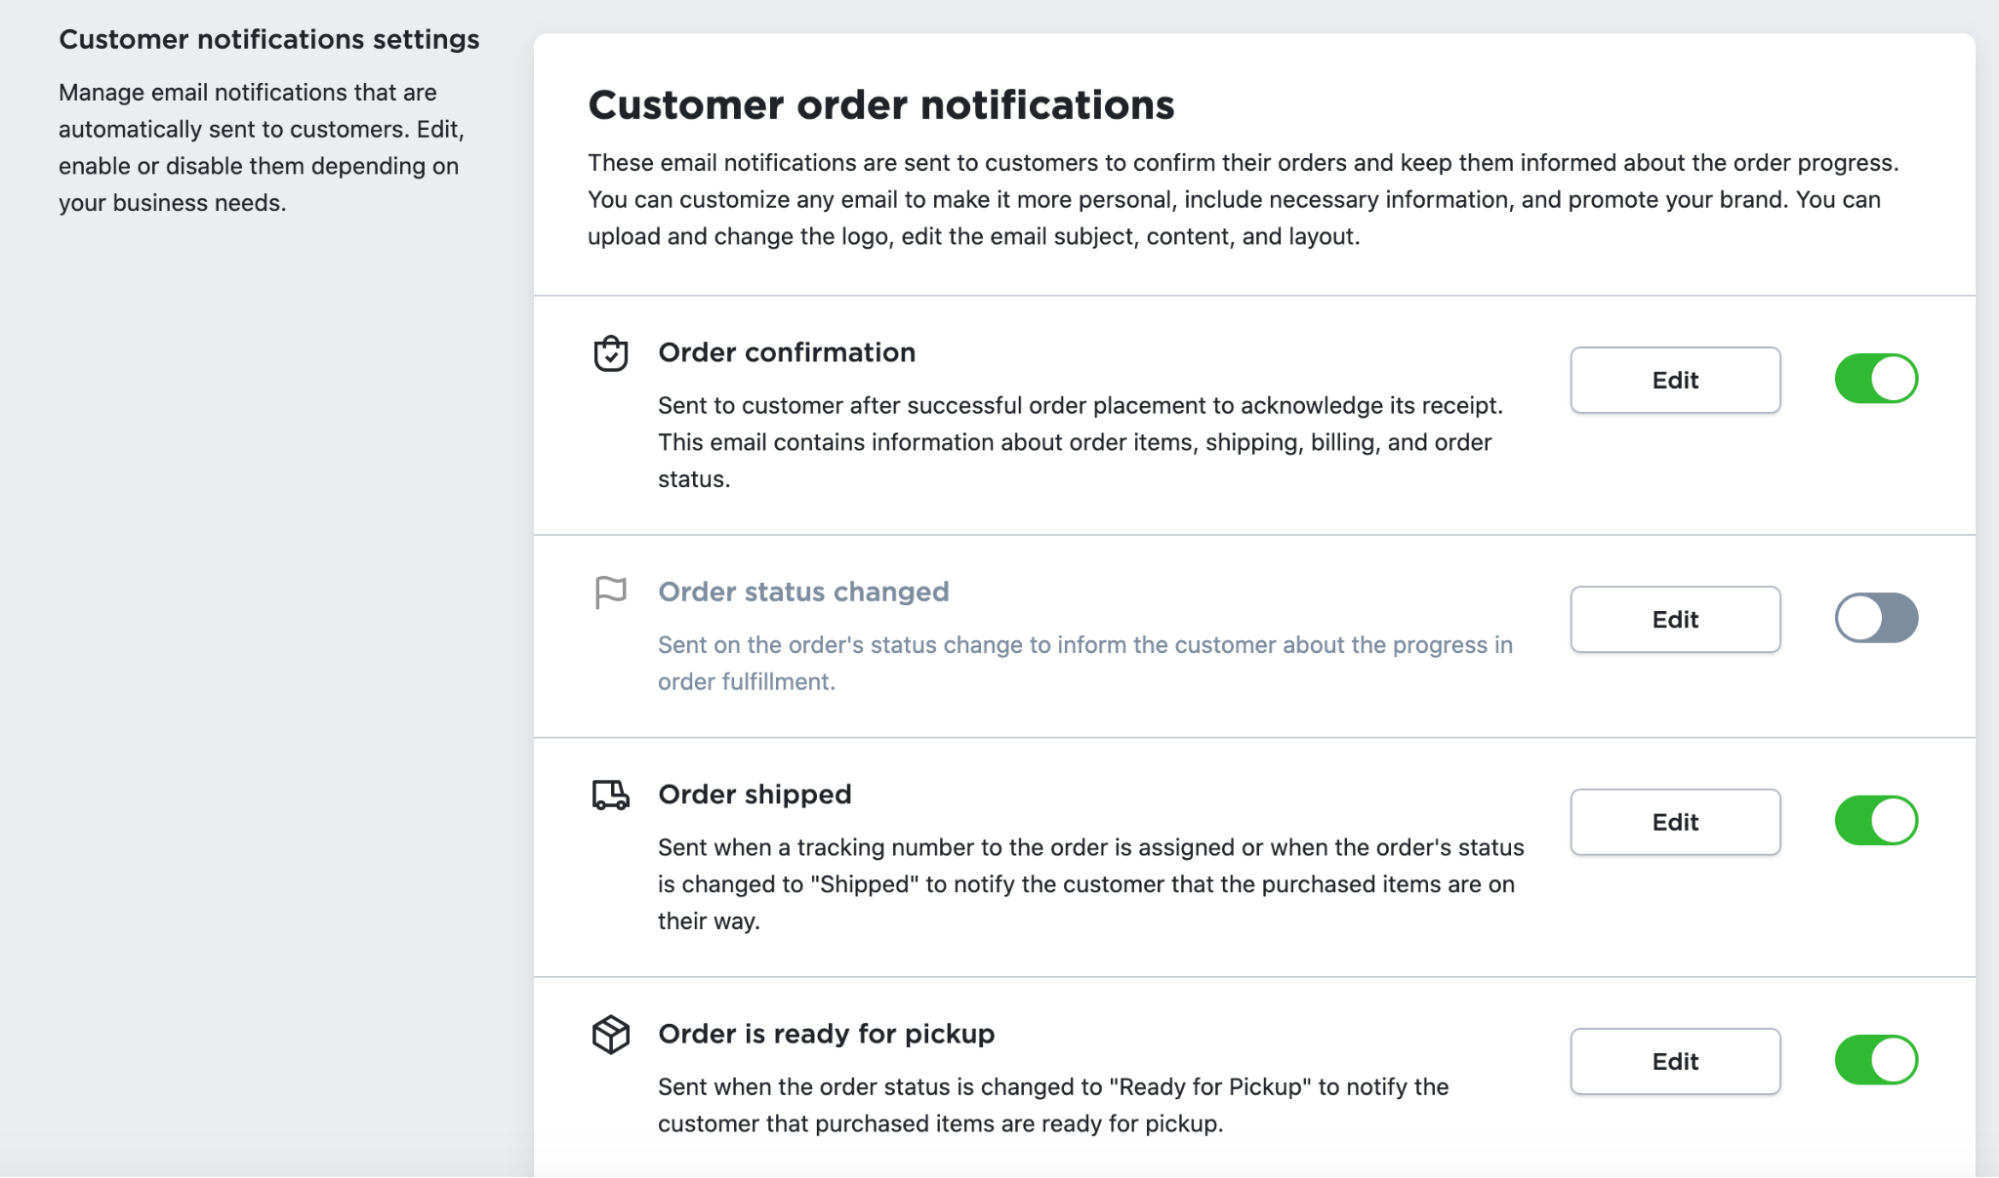 Customer Order Notifications